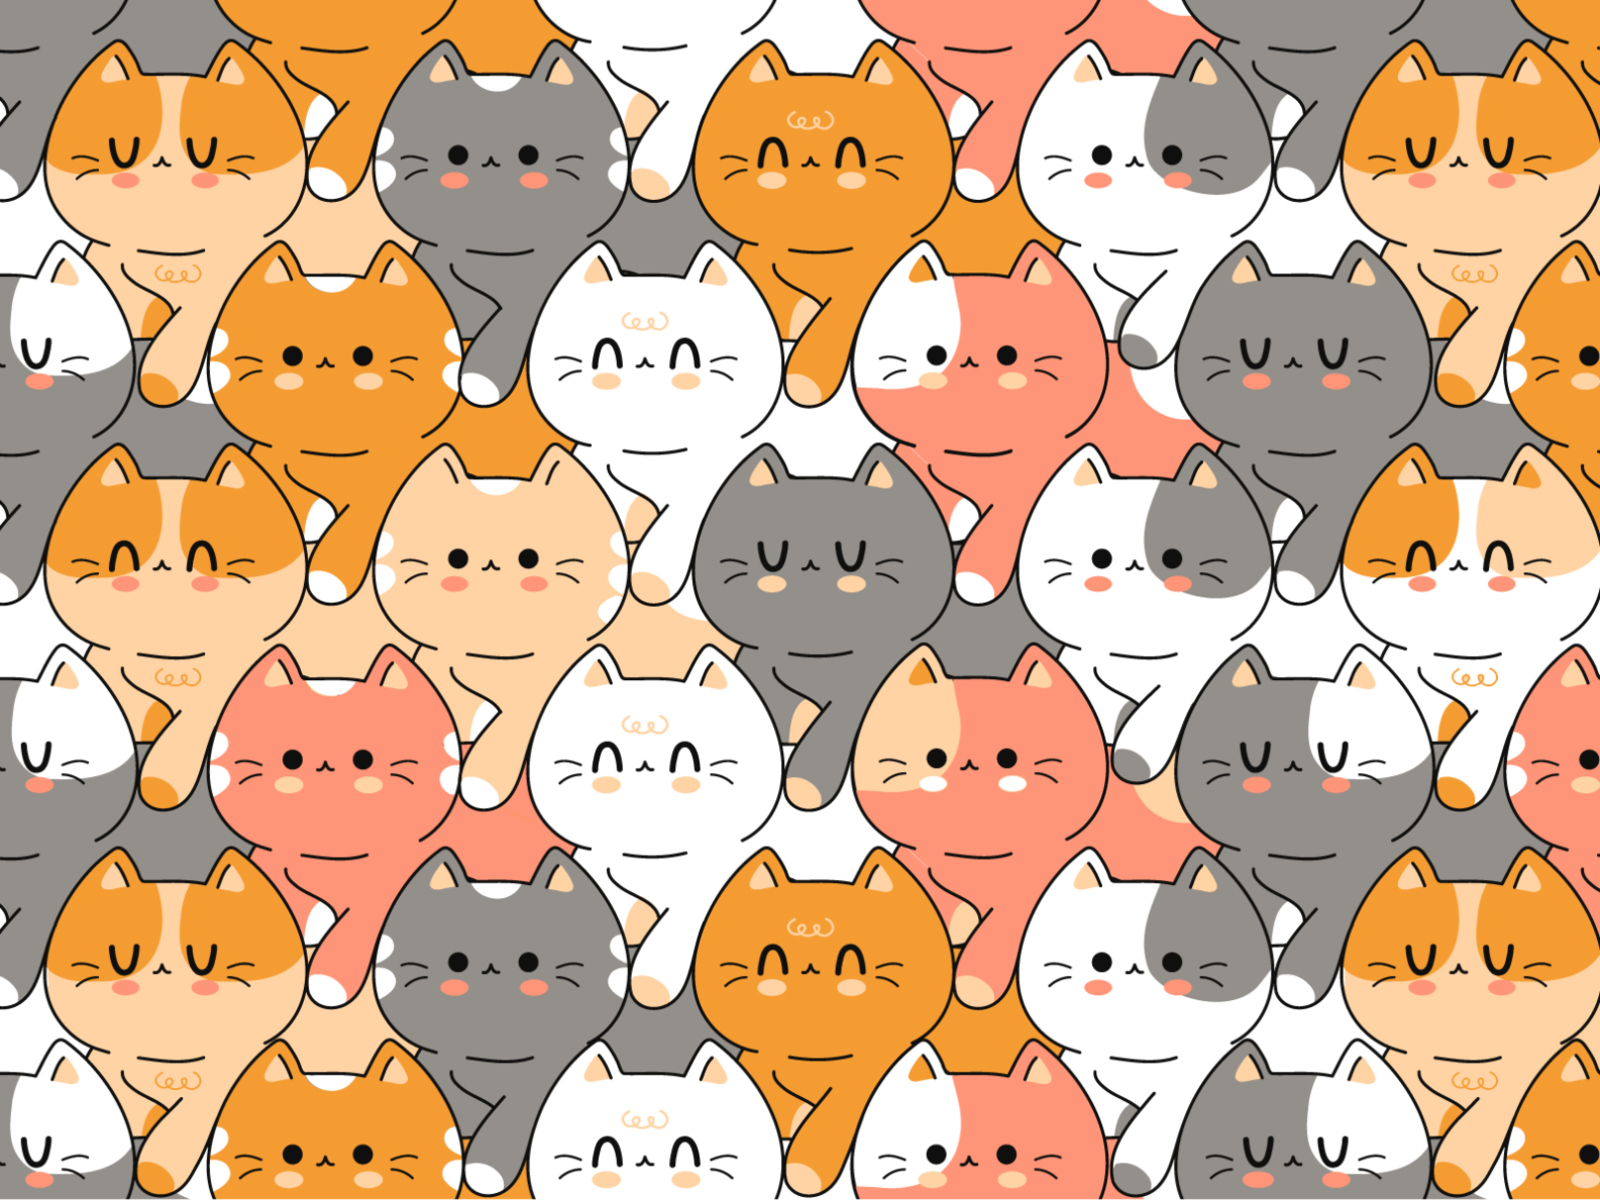 beautiful kawaii and cute cat wallpaper  Wallpaper  Xiaomi Community   Xiaomi